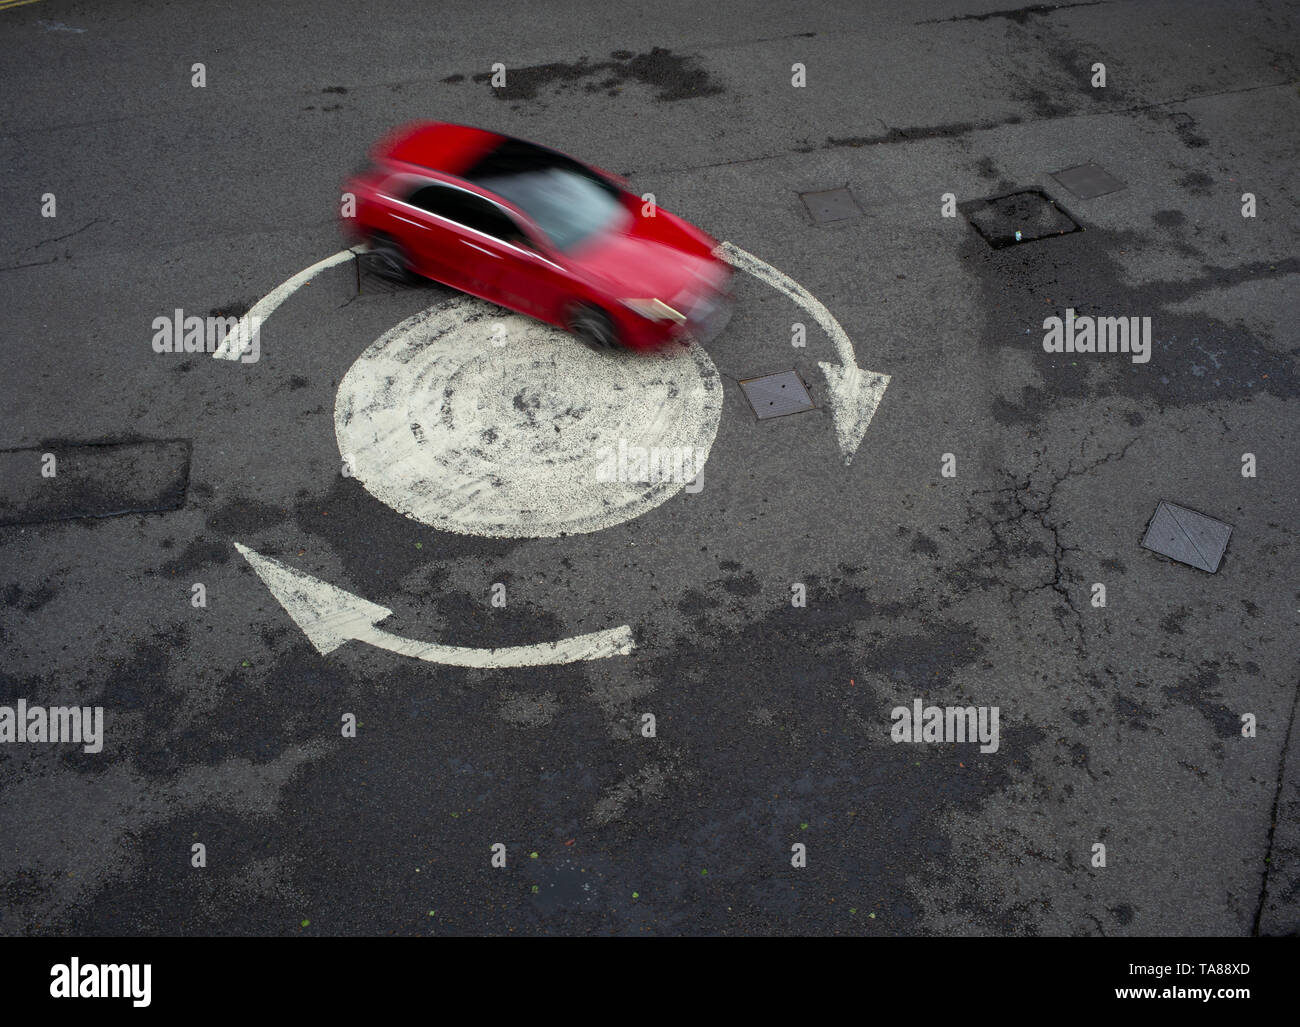 Vista aerea di un dipinto di freccia rotonda con una sola vettura andando in giro. Potrebbe essere usato come una analogia o nozione come perso o andando in cerchi. Foto Stock